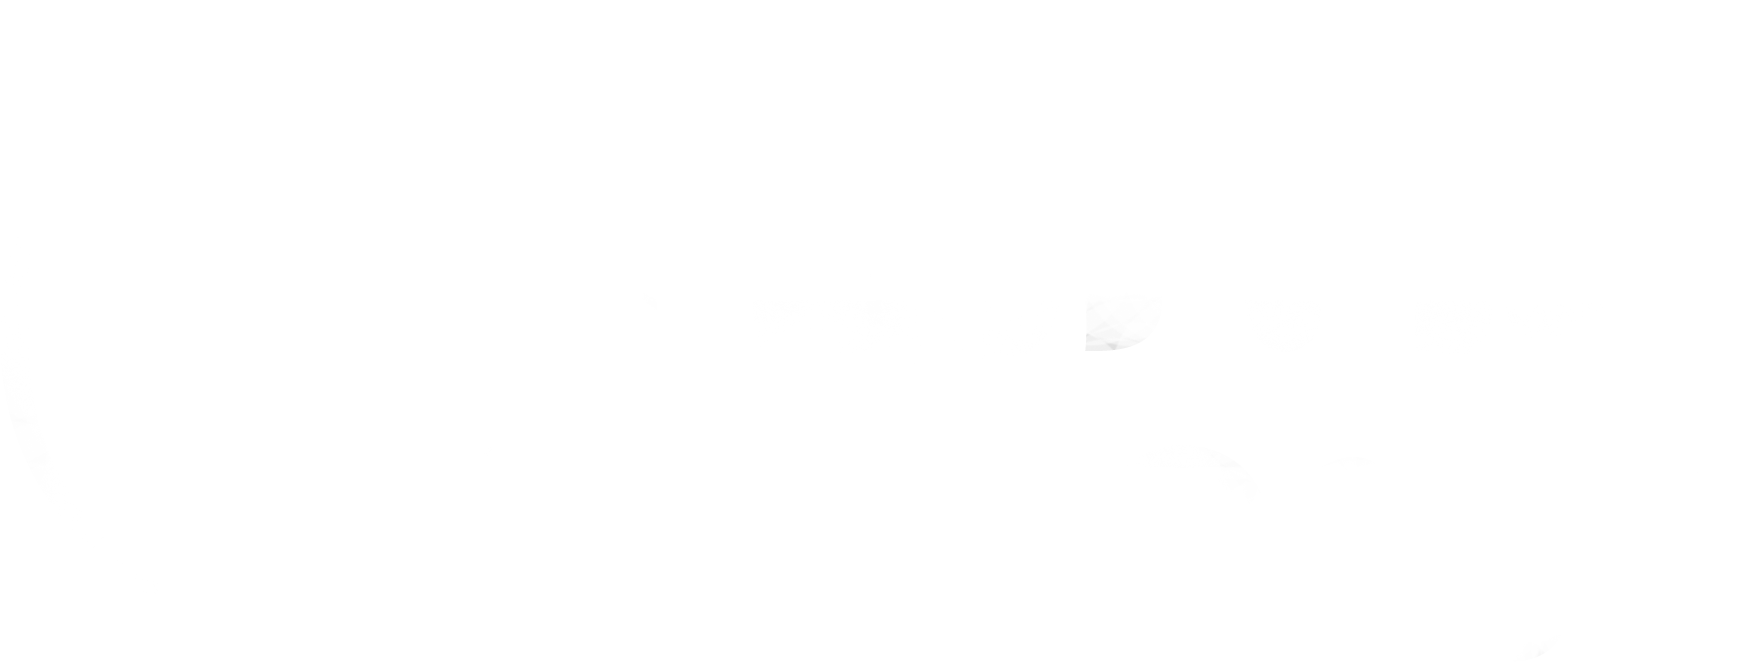 Alma boards